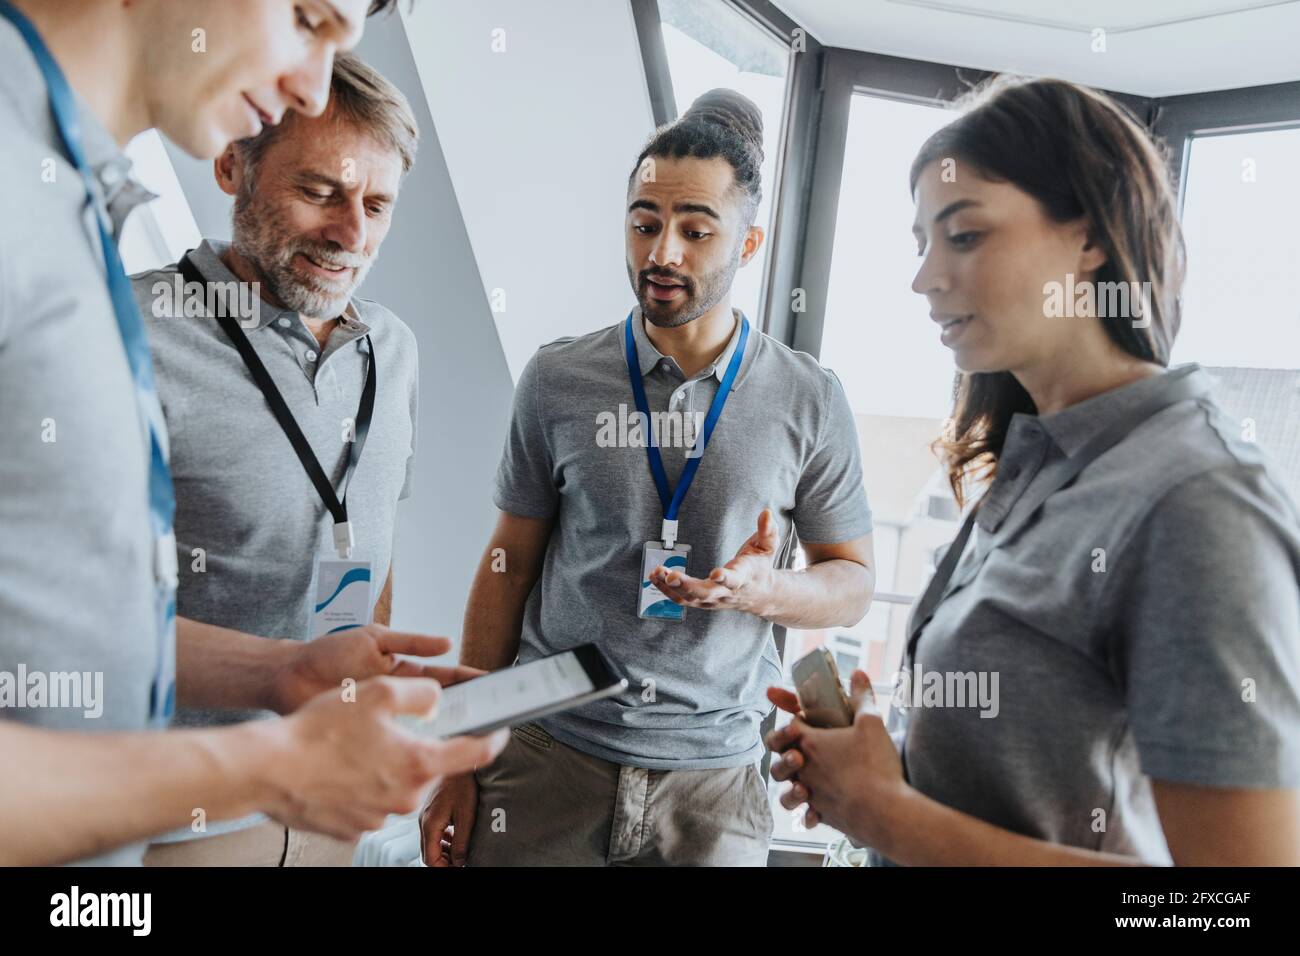 Un professionnel de l'homme discute avec ses collègues sur une tablette numérique pendant la conférence Banque D'Images